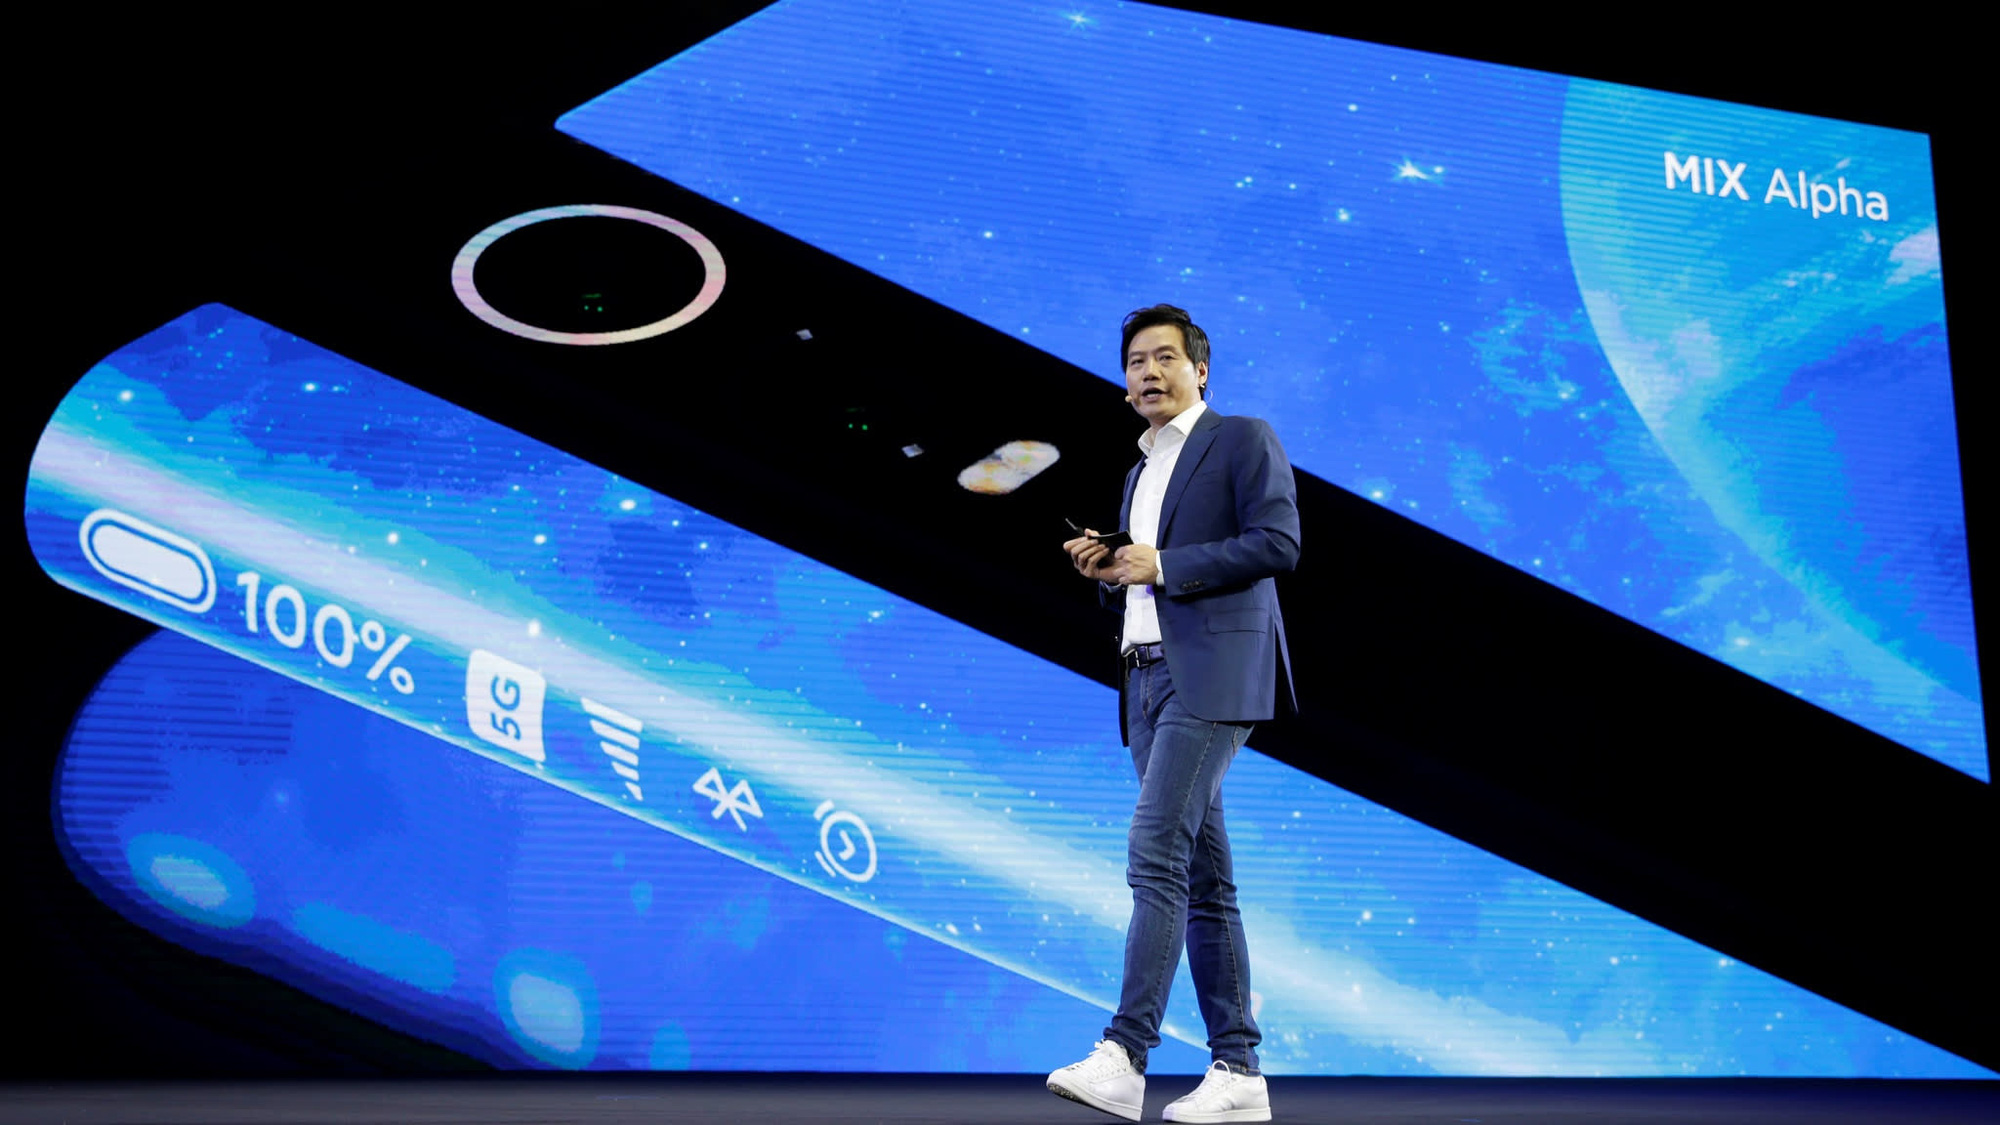 Phủ nhận cáo buộc theo dõi người dùng, Xiaomi cho biết đó chỉ là biện pháp nâng cao trải nghiệm  - Ảnh 2.